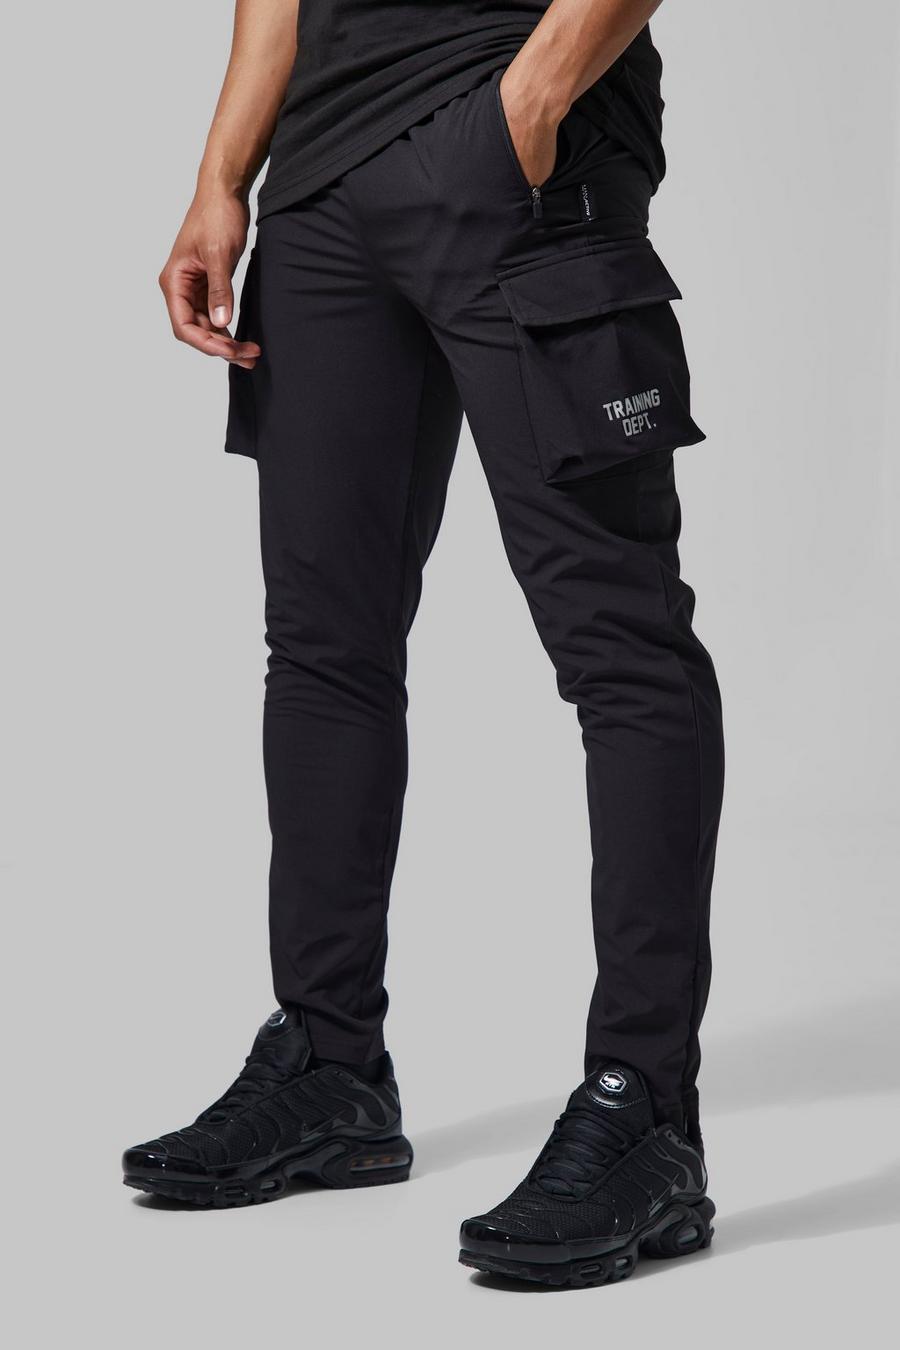 Pantalón deportivo MAN Active cargo resistente, Black